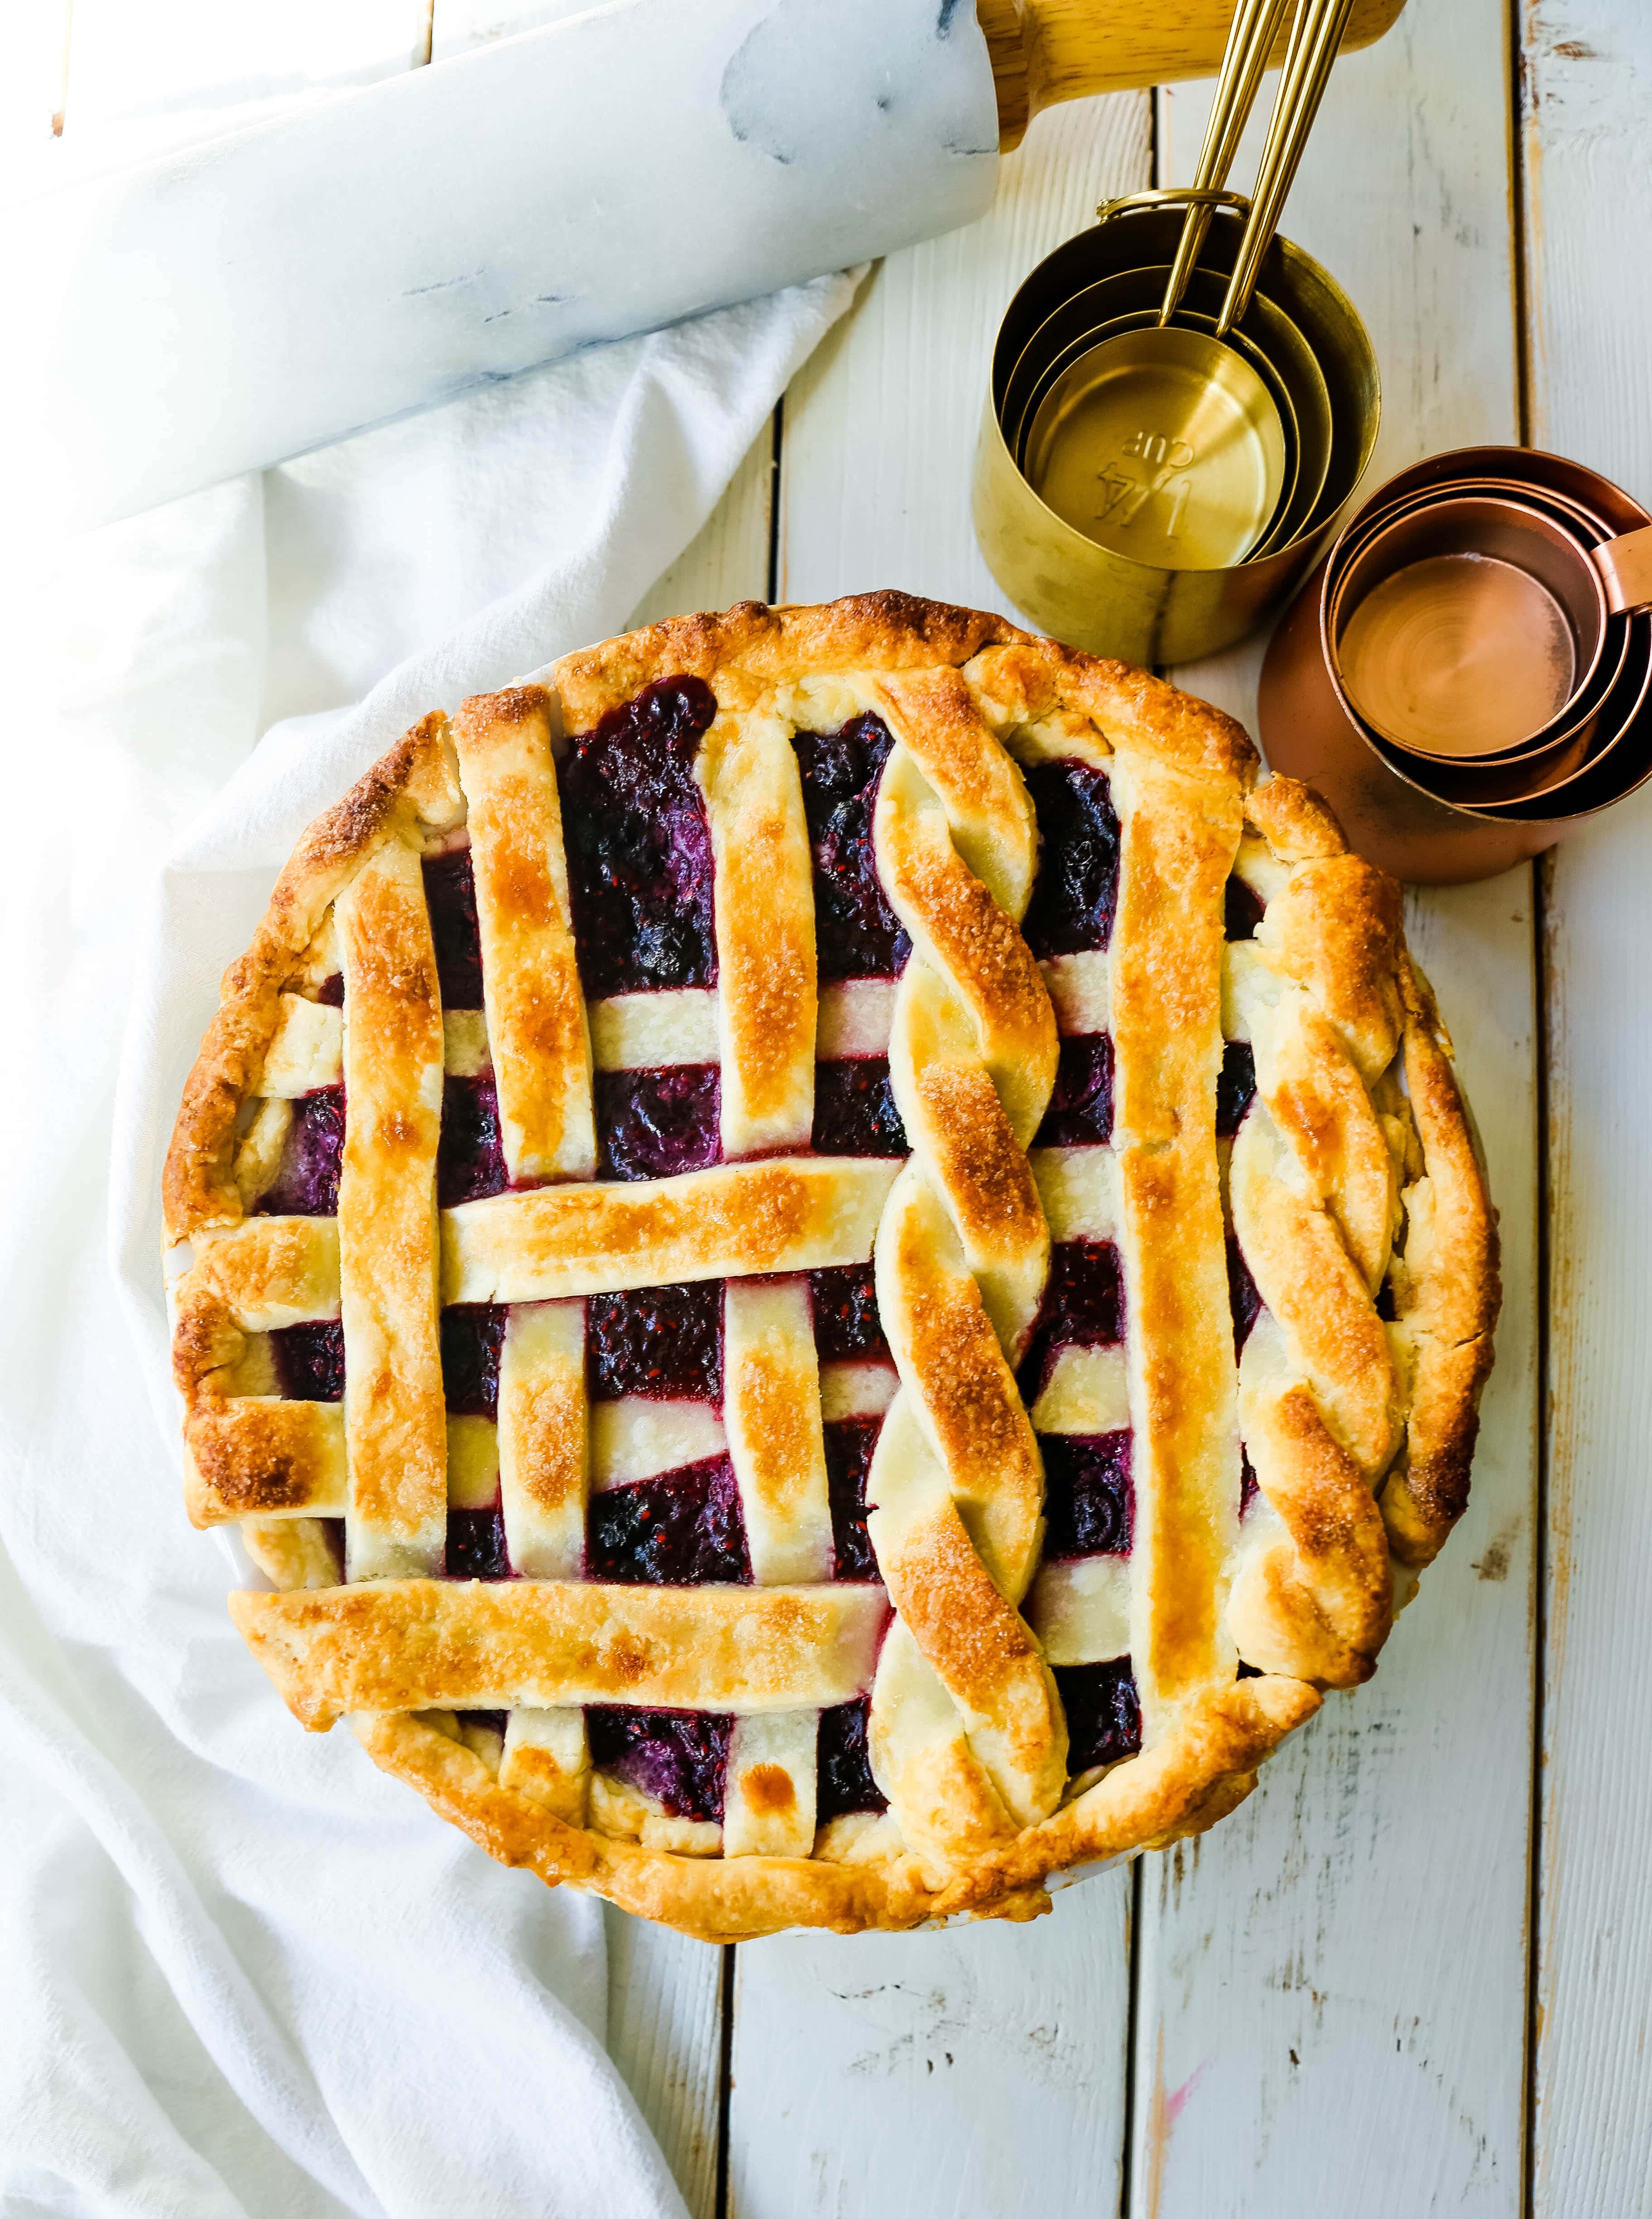 トリプル・ベリー・パイ。 バター風味のパイ生地を使った最高の自家製ベリーパイのレシピです。 バニラビーンズのアイスクリームをのせれば、完璧なベリーデザートの完成です。 最高のベリーパイのレシピ。www.modernhoney.com #berrypie #pie #berries #tripleberrypie #thanksgiving